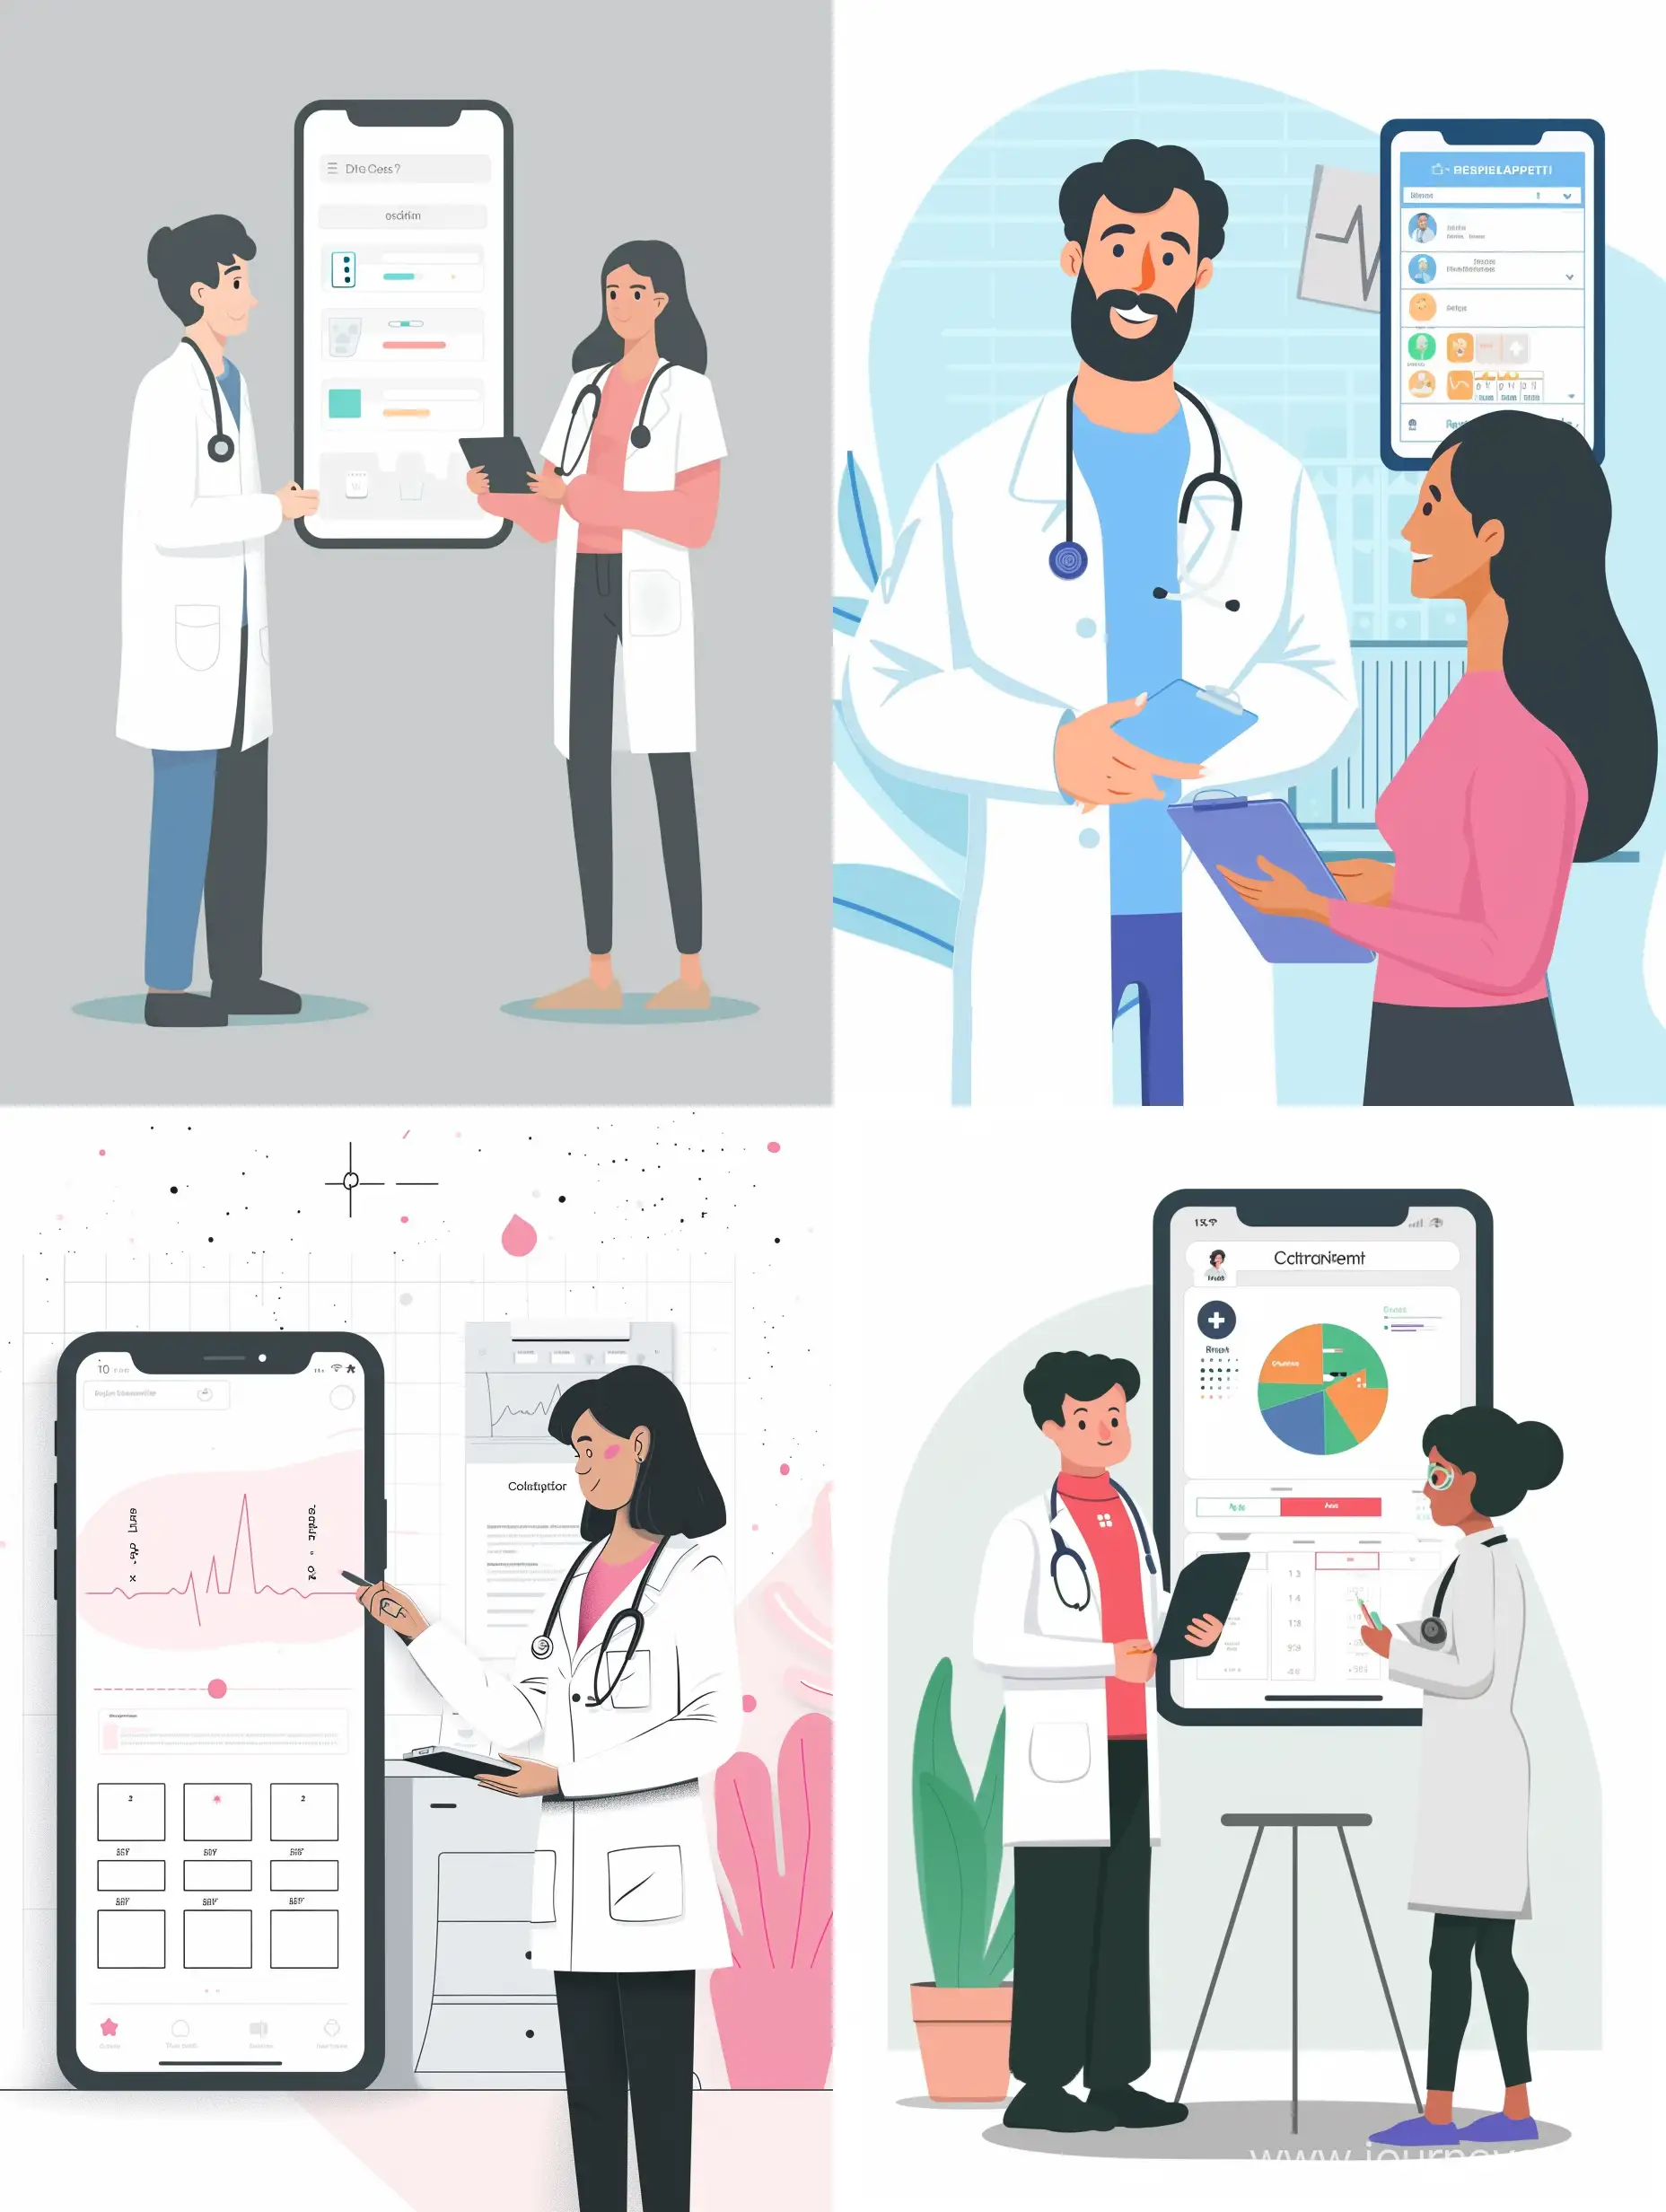 Иллюстрация для приложения которое помогает клиентам записываться на прием к врачу